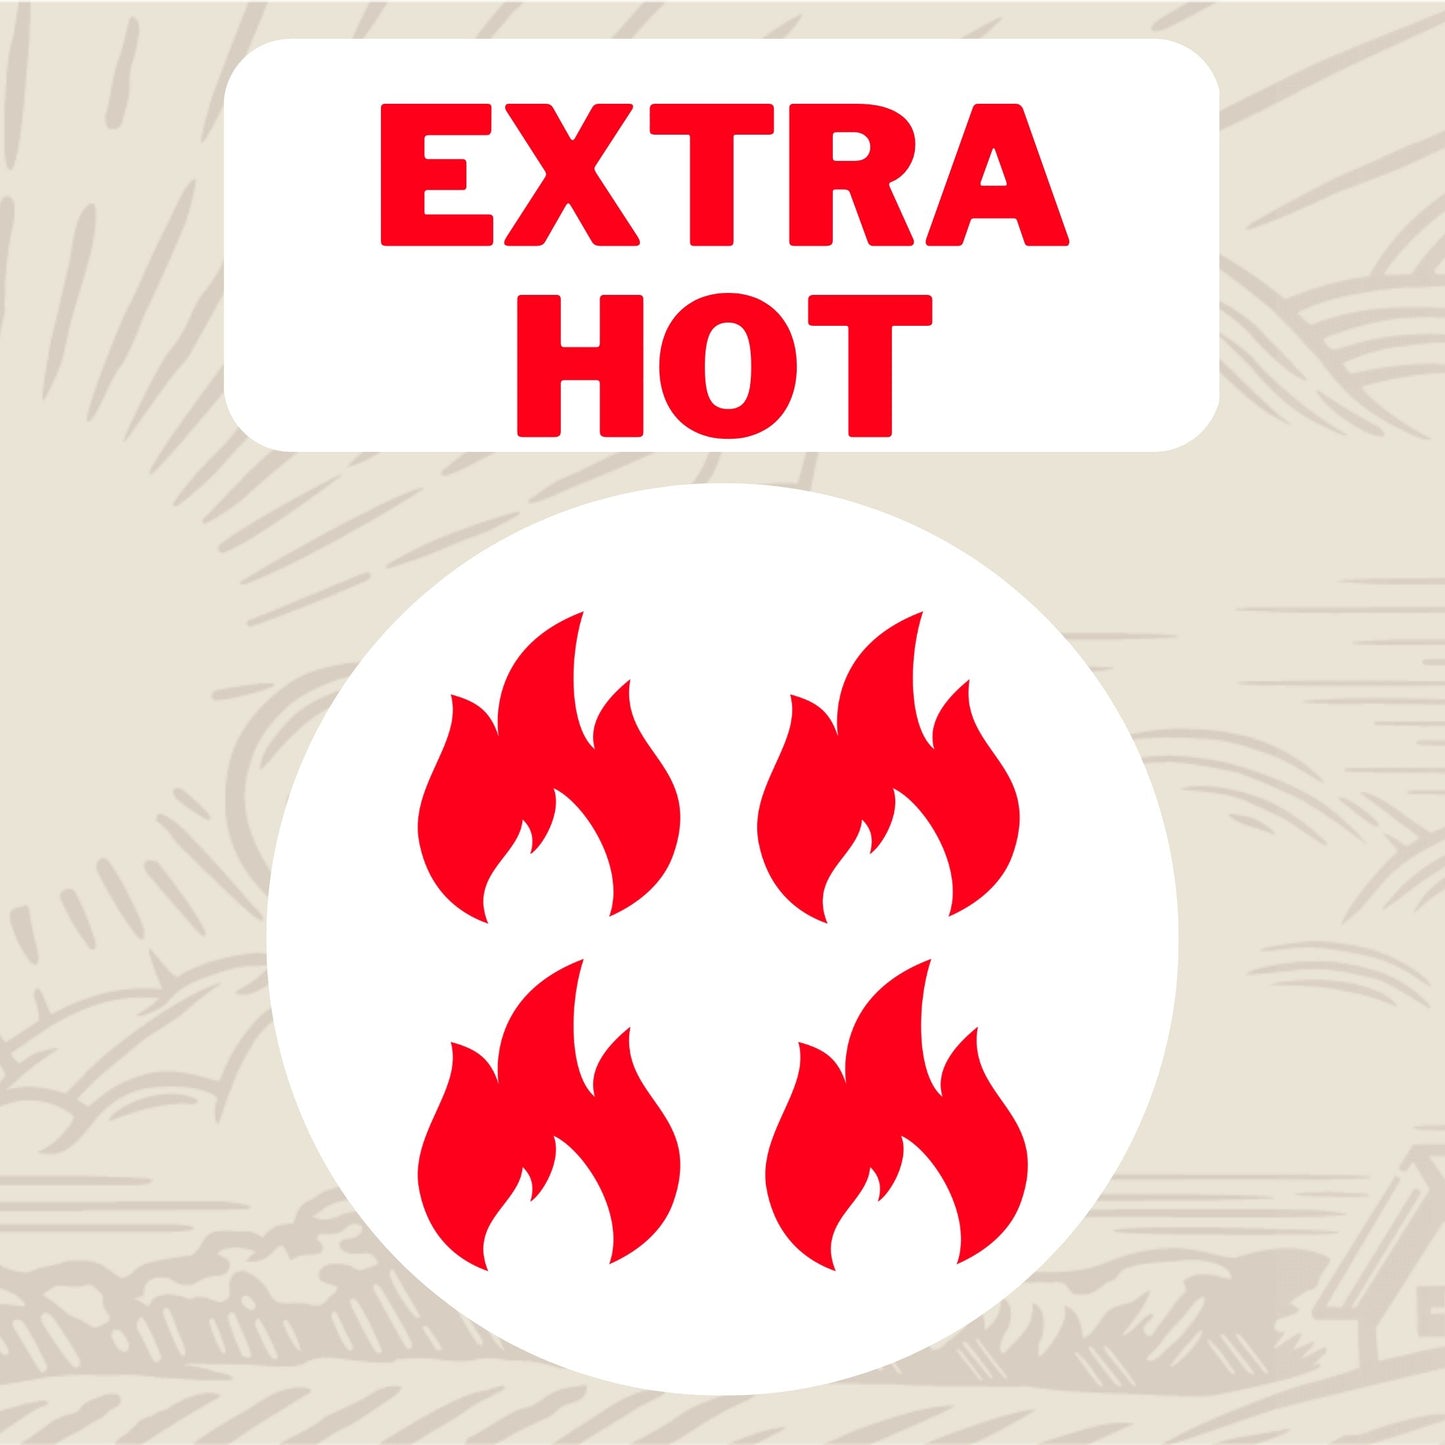 Heat Level: Extra Hot